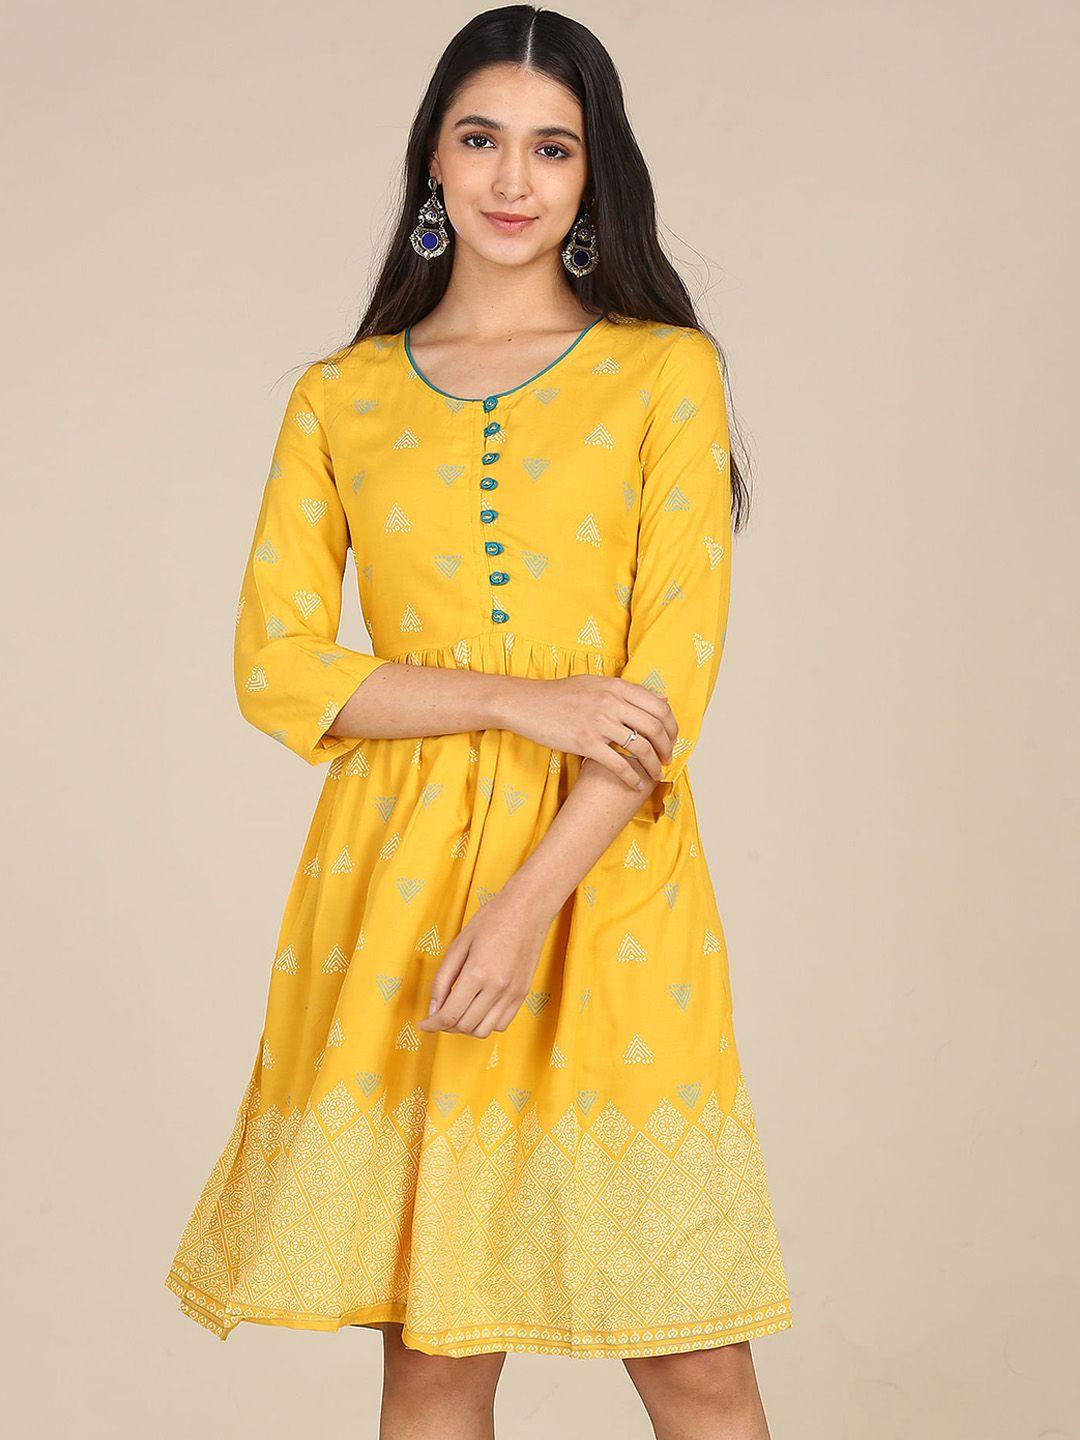 karigari-yellow-dress